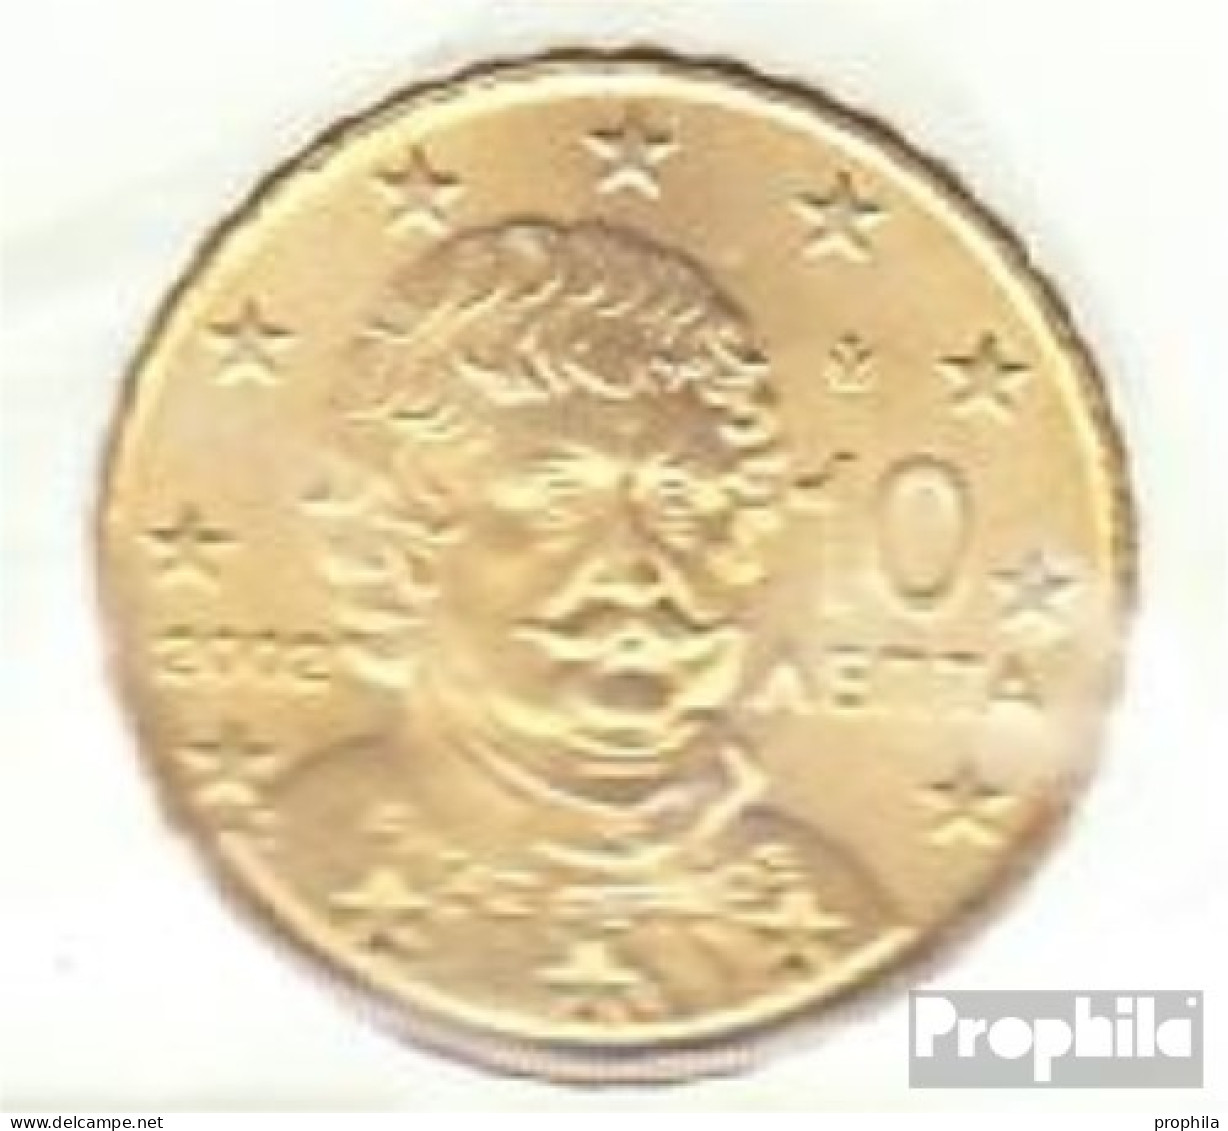 Griechenland GR 4 2002 Stgl./unzirkuliert Stgl./unzirkuliert 2002 Kursmünze 10 Cent - Griechenland